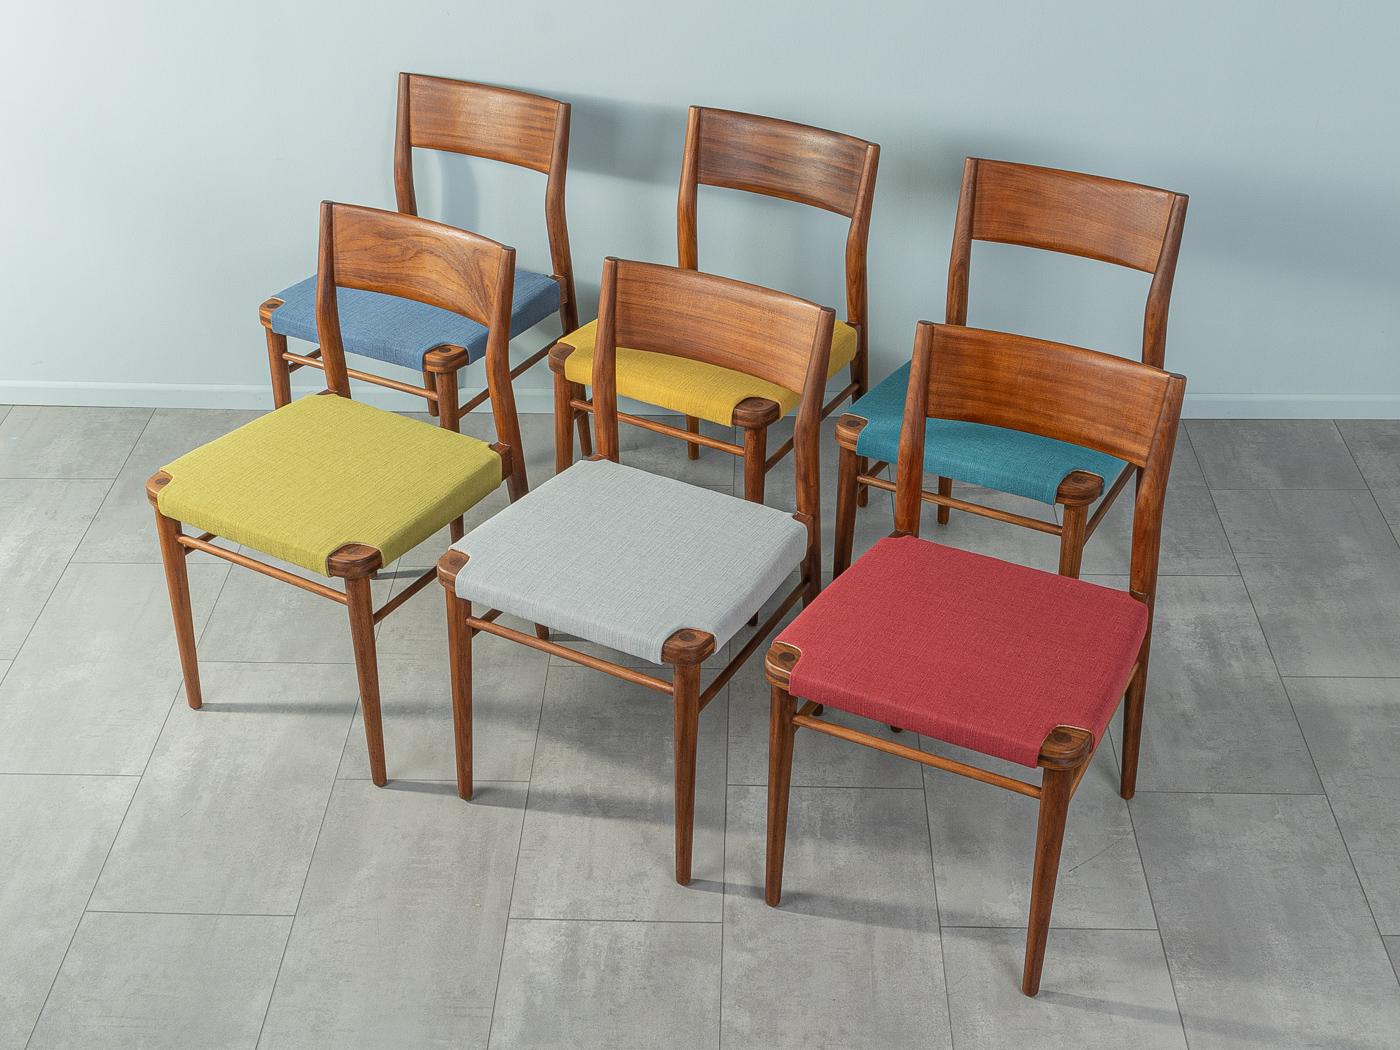 Wunderschöne Esszimmerstühle Modell 351 aus den 1950er Jahren von Georg Leowald für Wilkhahn. Massiver Rahmen und Rückenlehne aus Nussbaum. Die Stühle wurden neu gepolstert und mit einem hochwertigen Polsterstoff in sechs Farben bezogen. Das Angebot